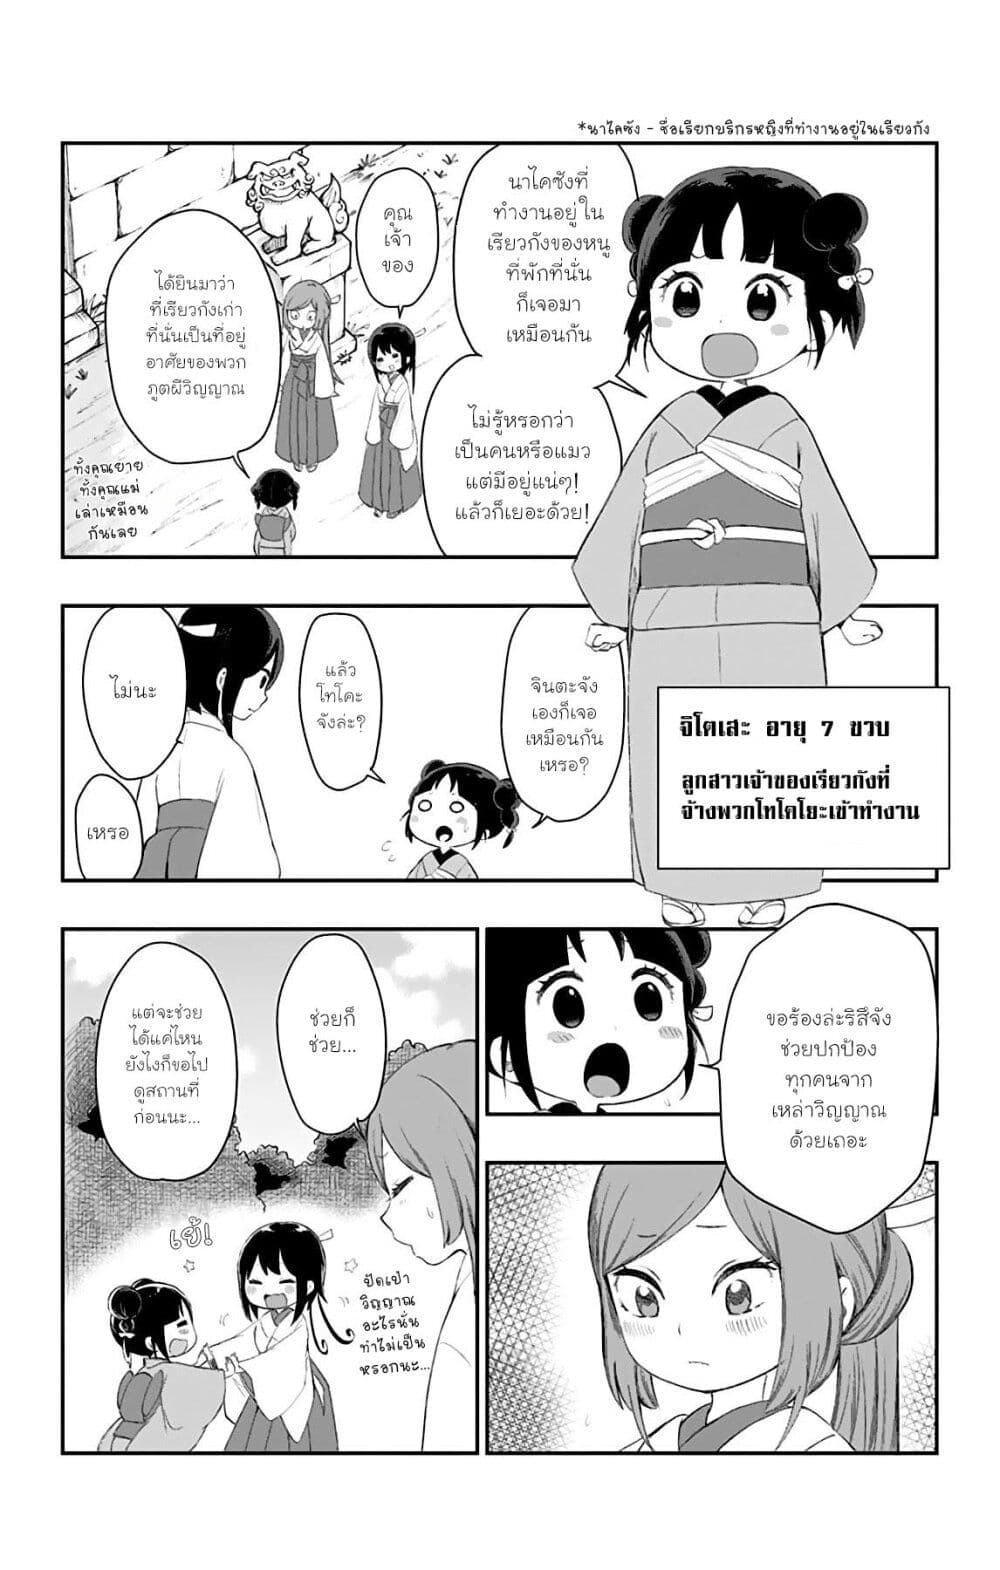 Shouwa Otome Otogibanashi เรื่องเล่าของสาวน้อย ยุคโชวะ ตอนที่ 26 (3)